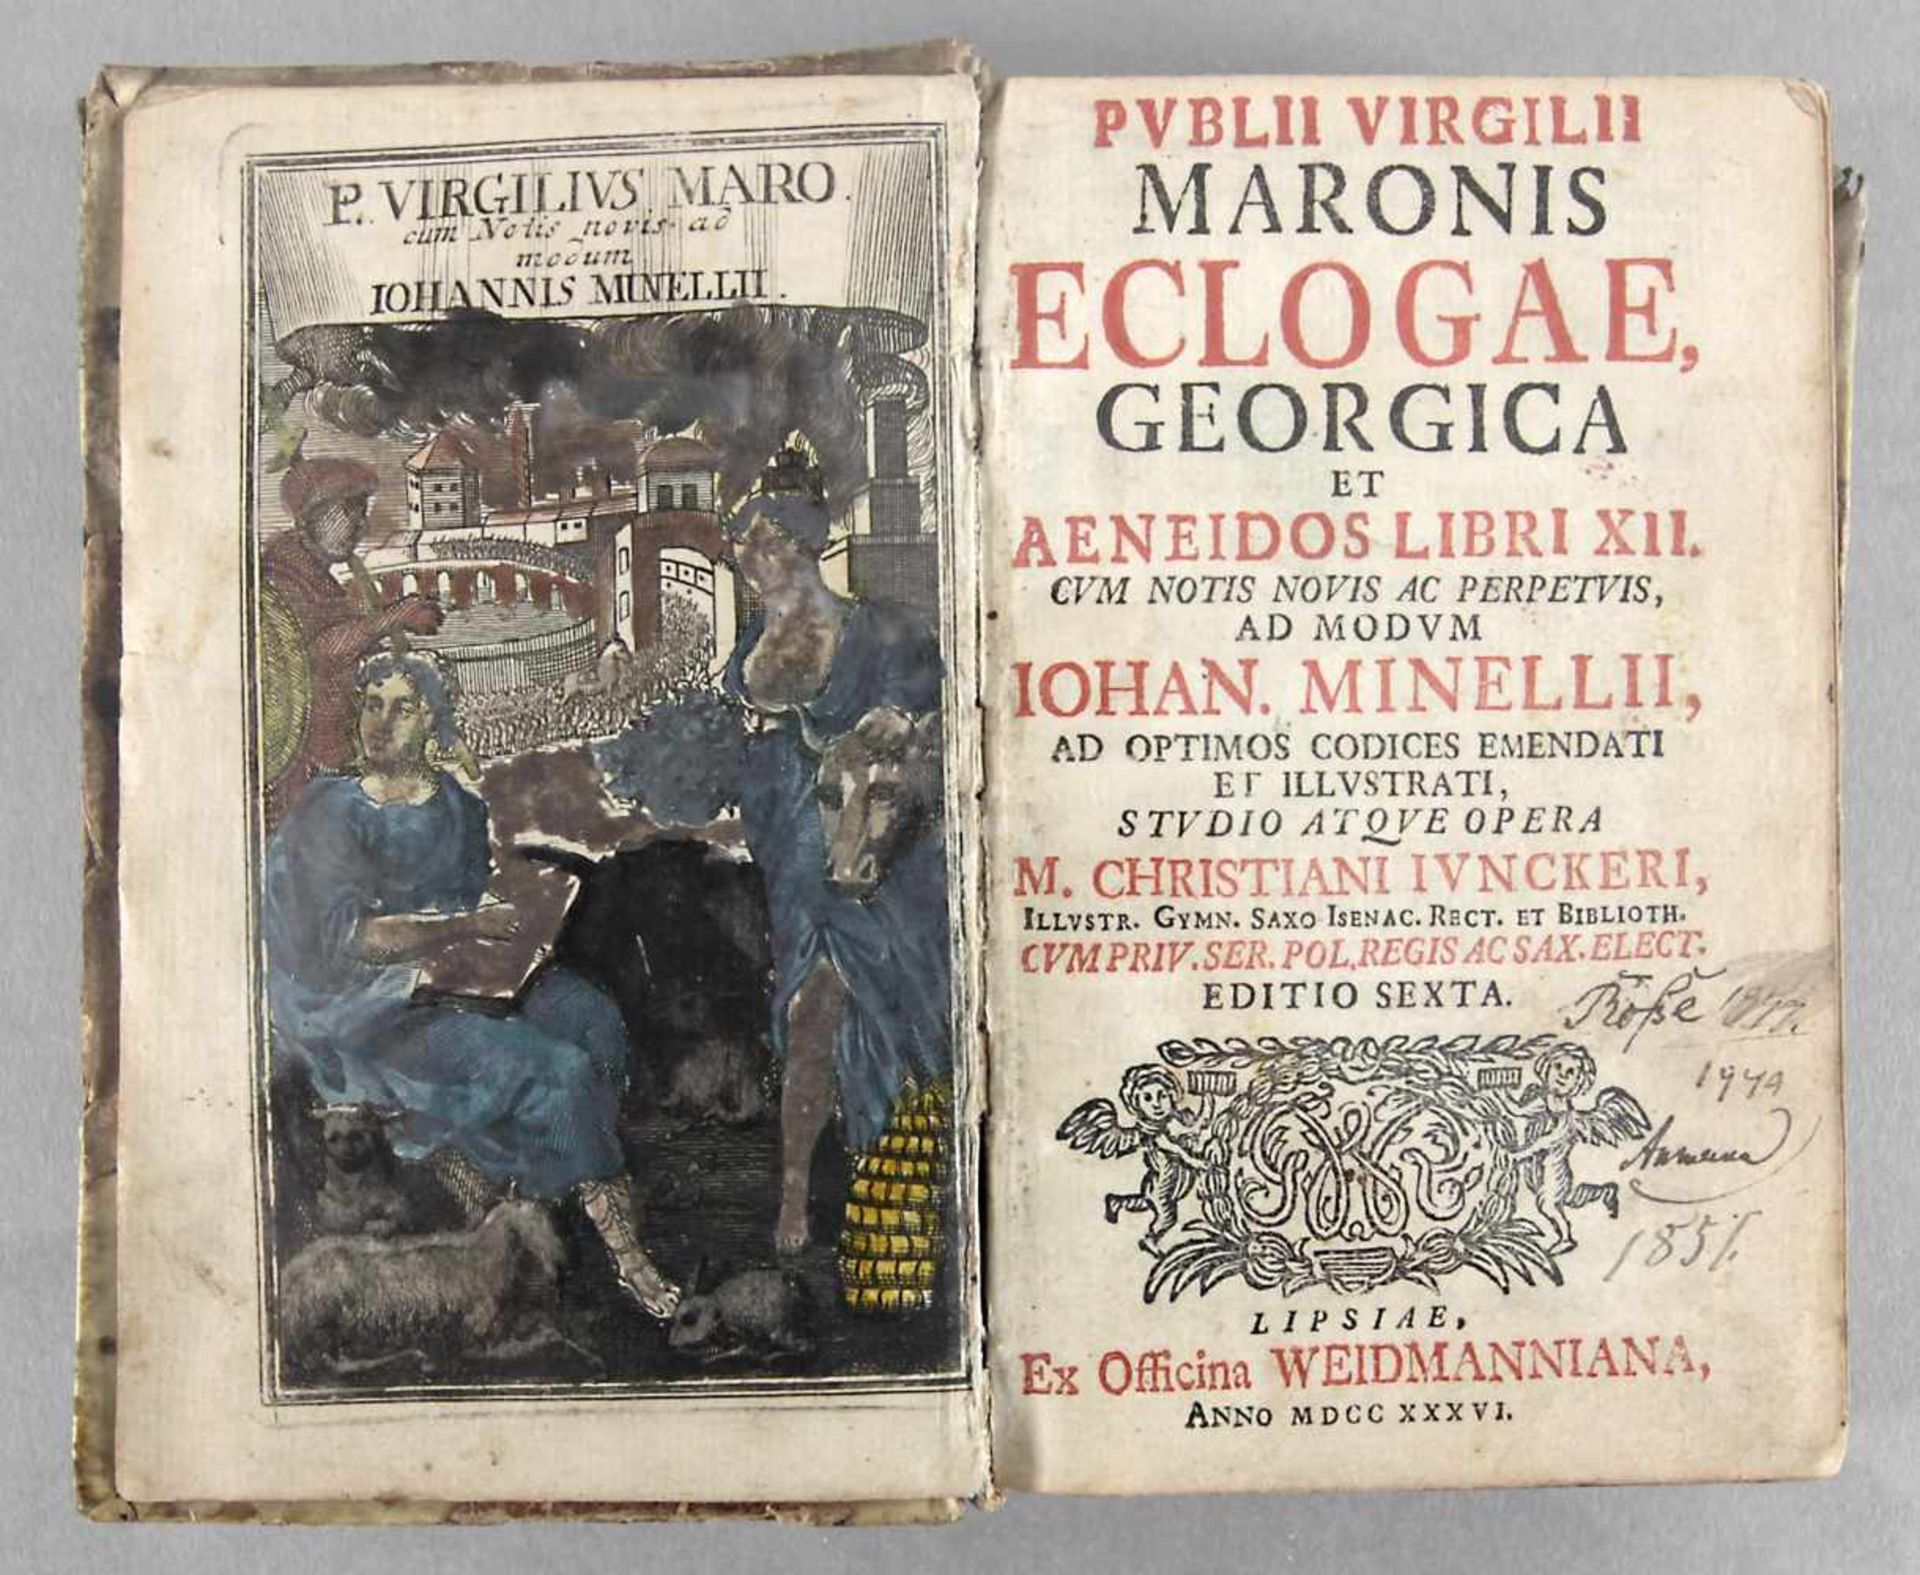 "Publii Virgilii Maronis Eclogae Georgica et Aeneidos Libri XII" von Publius Vergilius Maro, mit